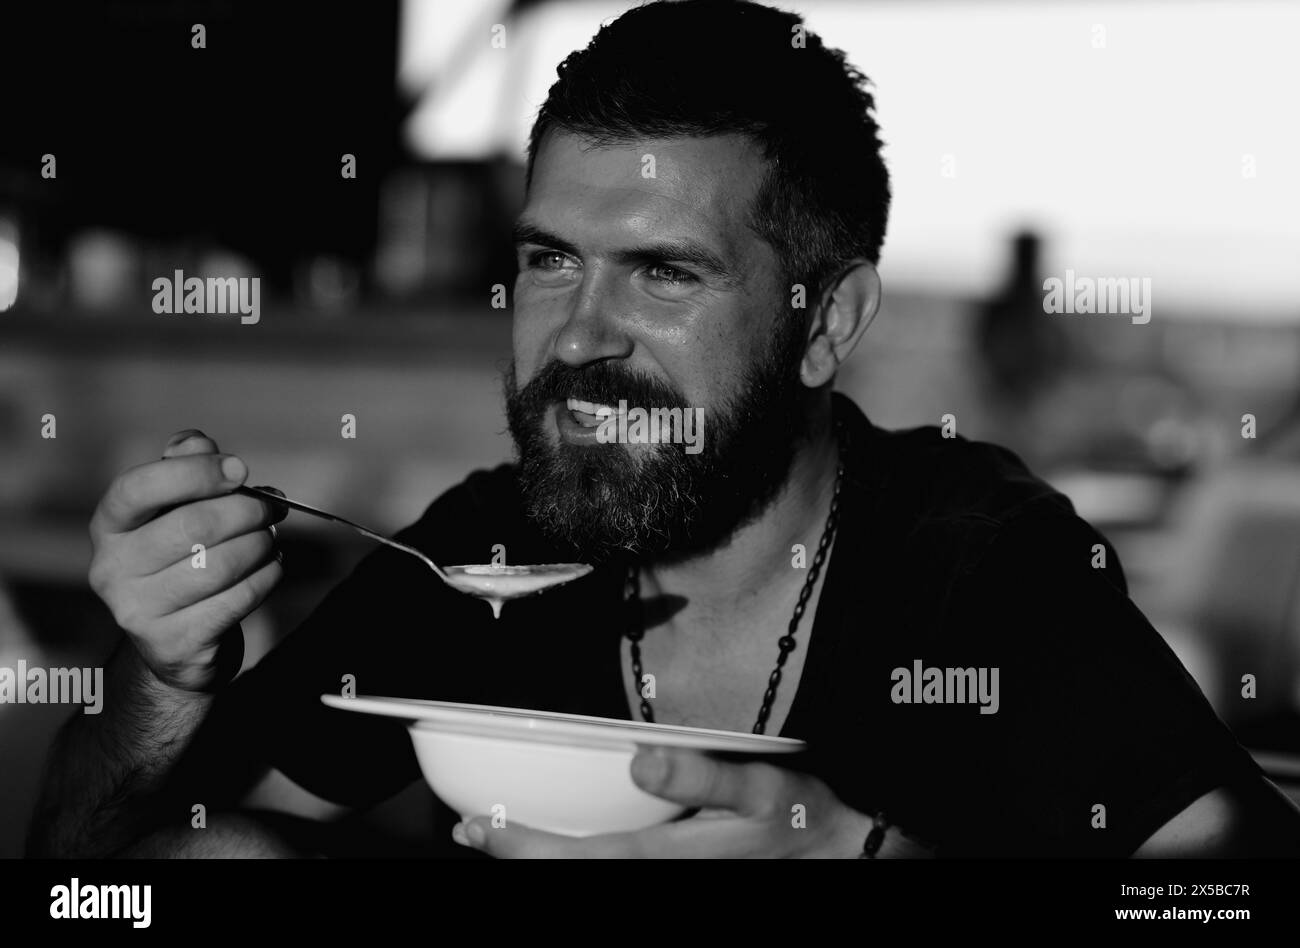 Der Mann isst Suppe. Guter Appetit. Bärtiger Mann mit einer Schüssel Suppe. Glücklicher Kerl, der draußen Suppe isst. Mann isst köstliche Suppe im Restaurant. Abendessen und Mahlzeit Stockfoto